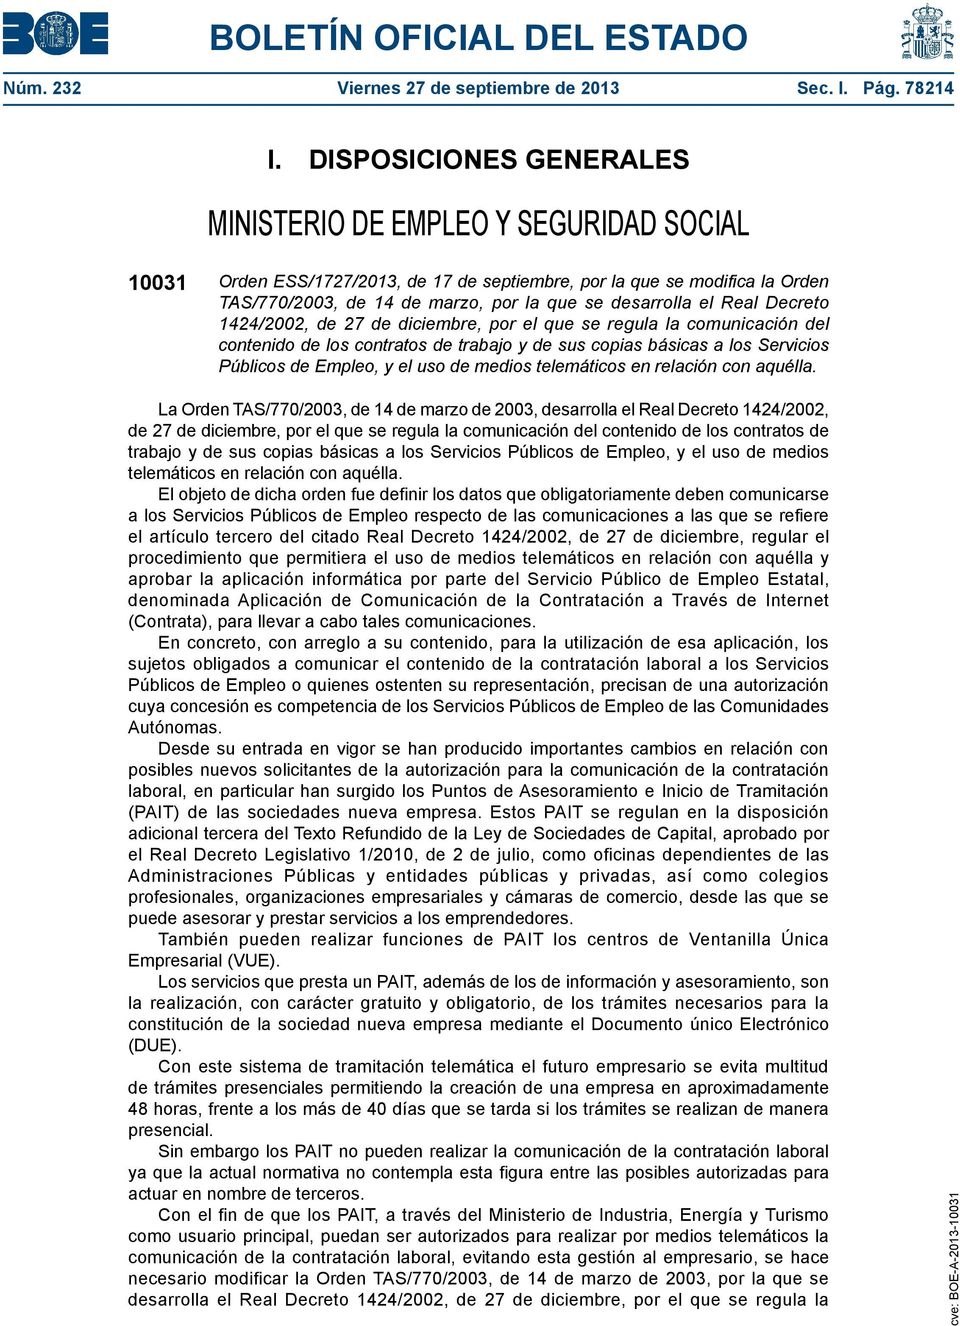 el Real Decreto 1424/2002, de 27 de diciembre, por el que se regula la comunicación del contenido de los contratos de trabajo y de sus copias básicas a los Servicios Públicos de Empleo, y el uso de